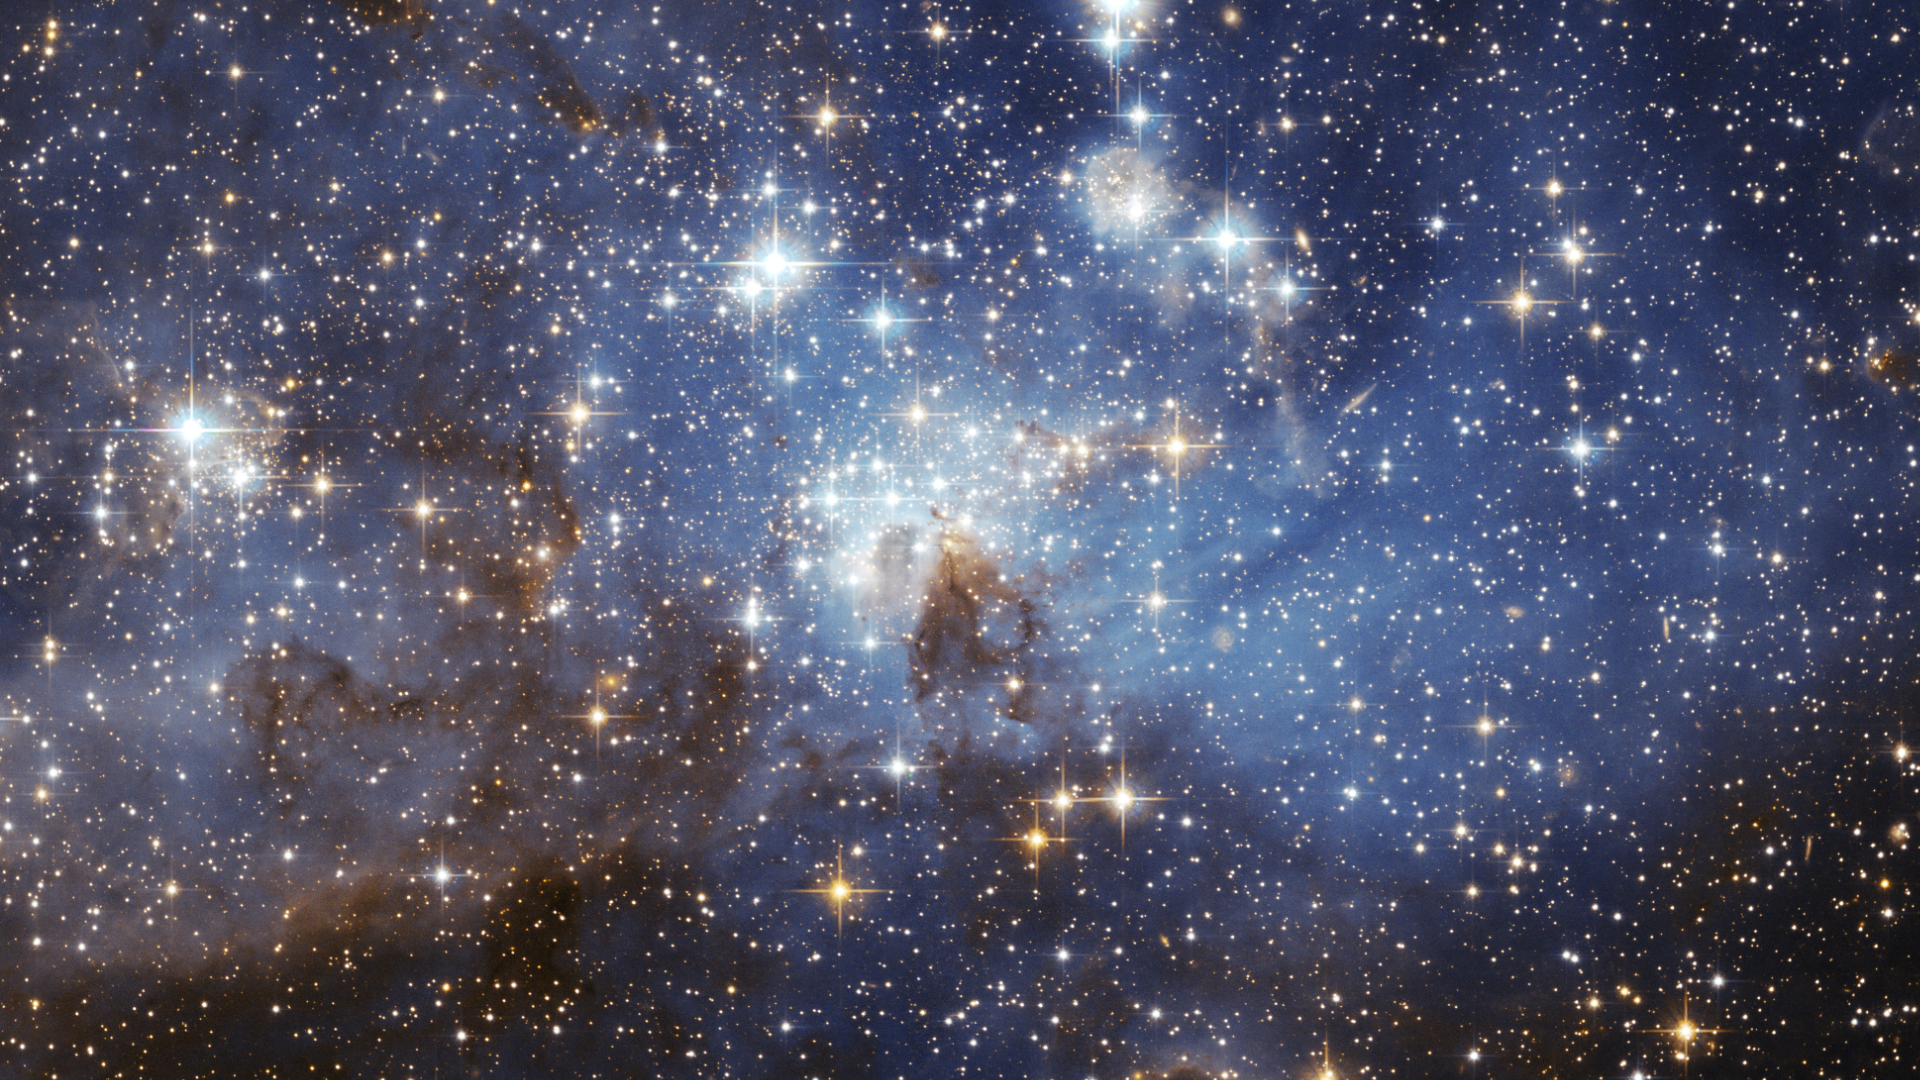 Il y aurait environ 200 000 000 000 000 000 000 000 étoiles dans l'Univers  - Numerama